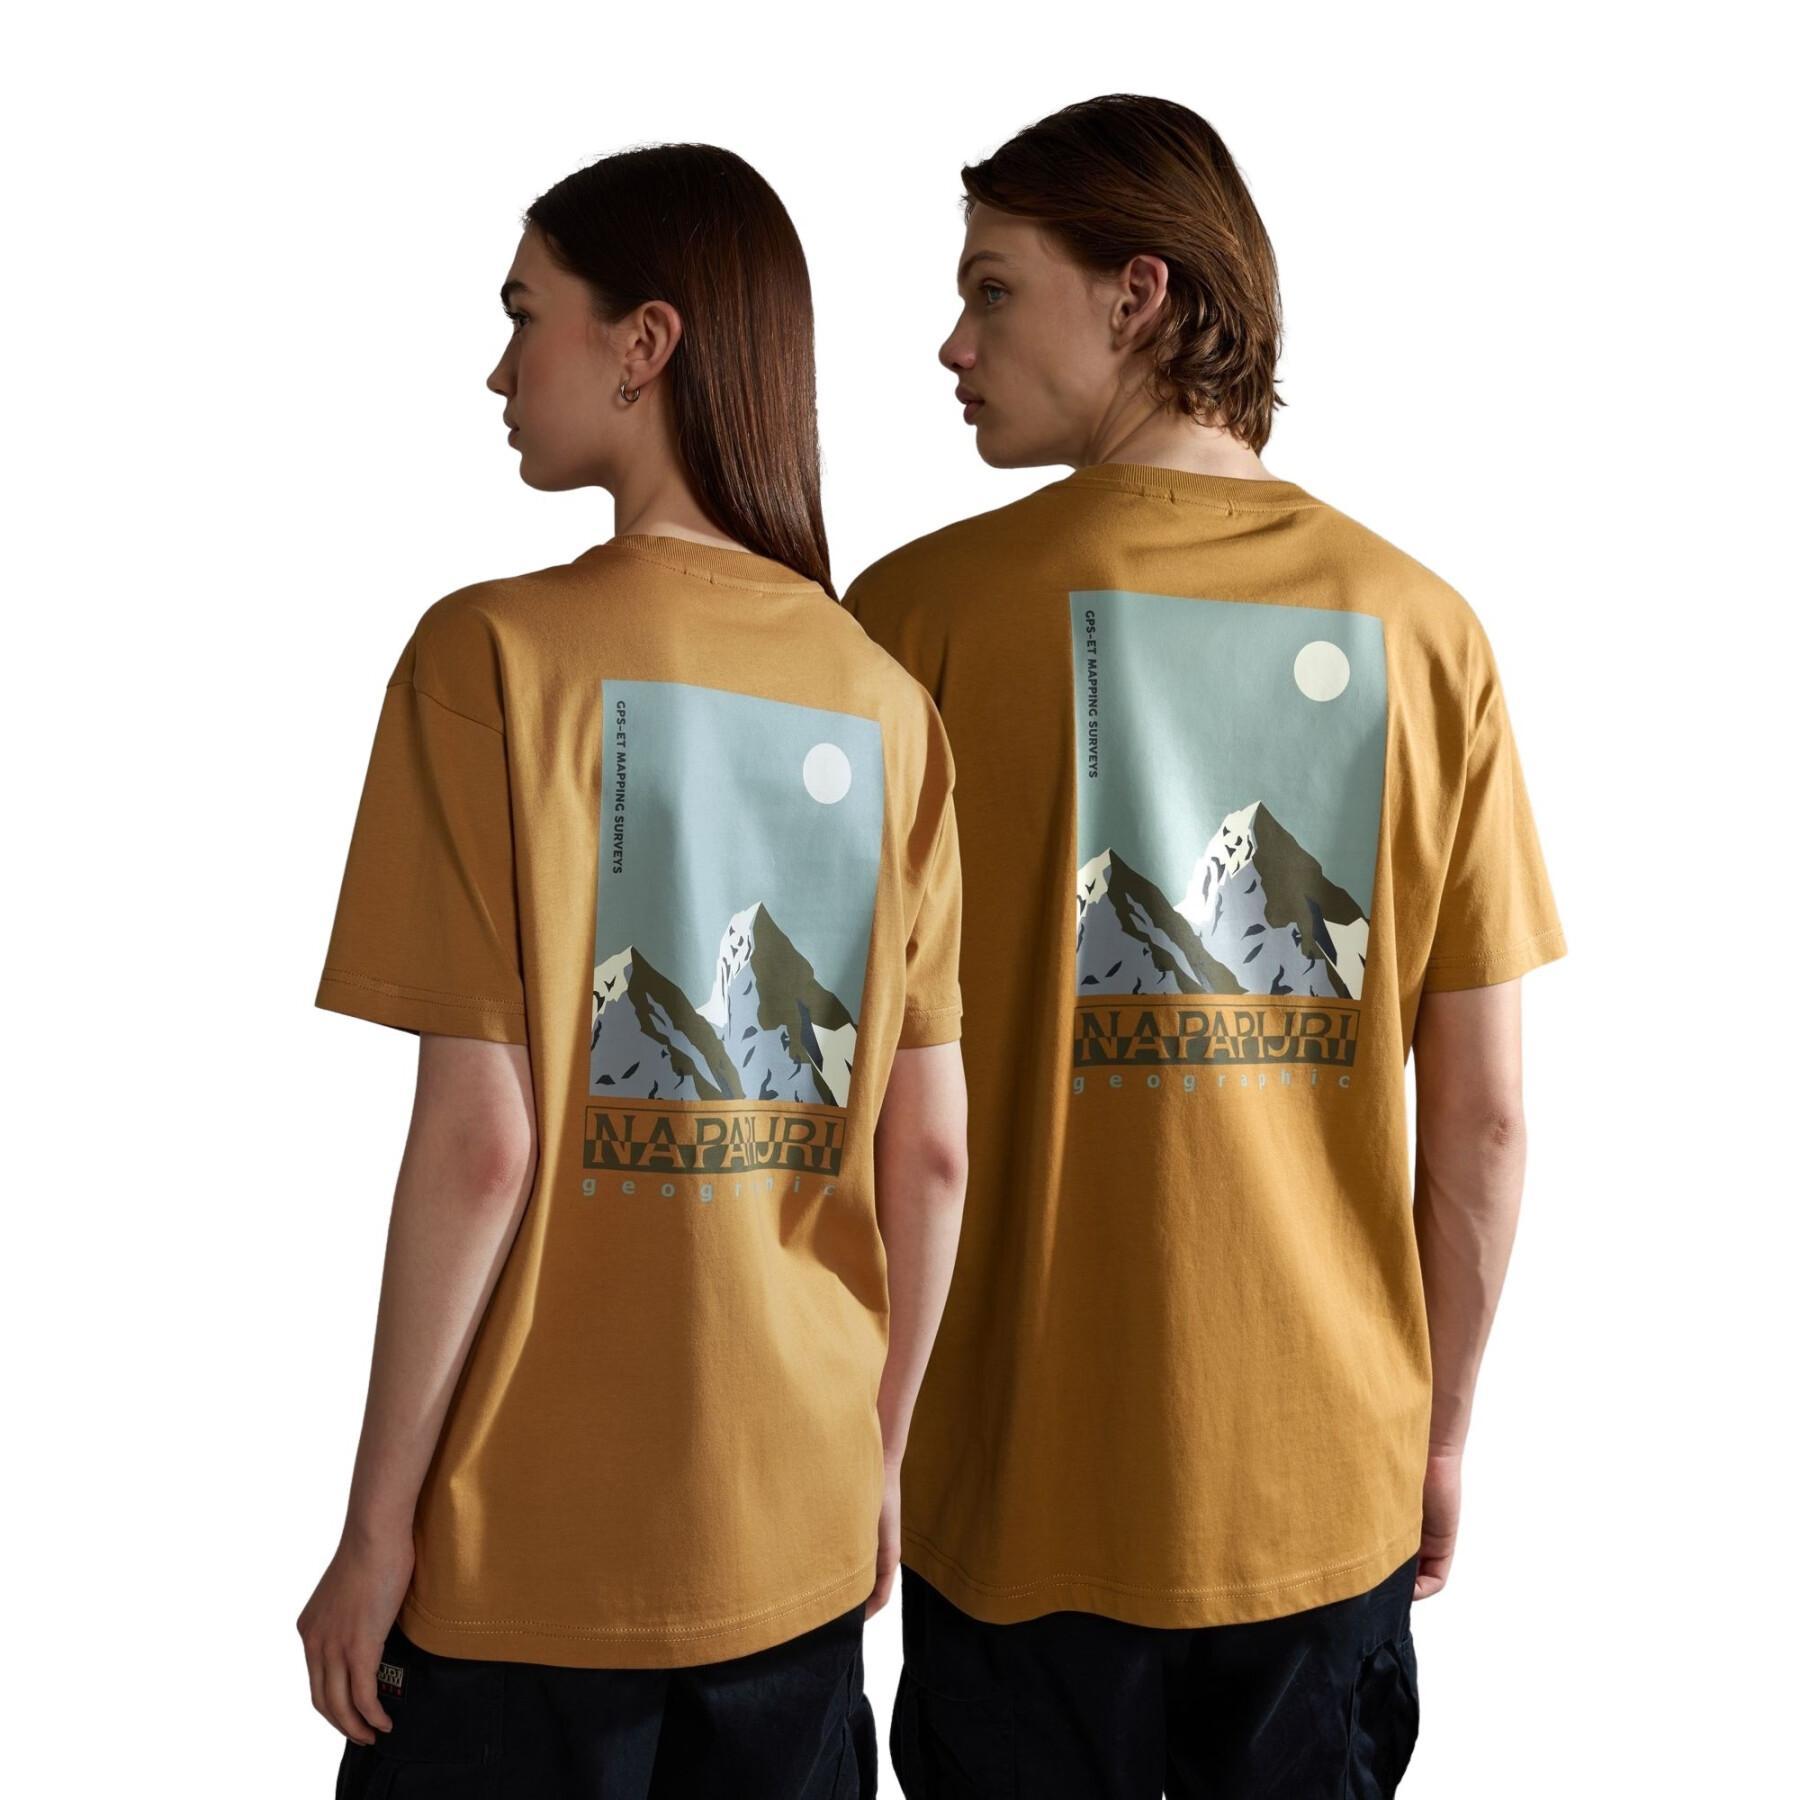 Camiseta Napapijri Telemark